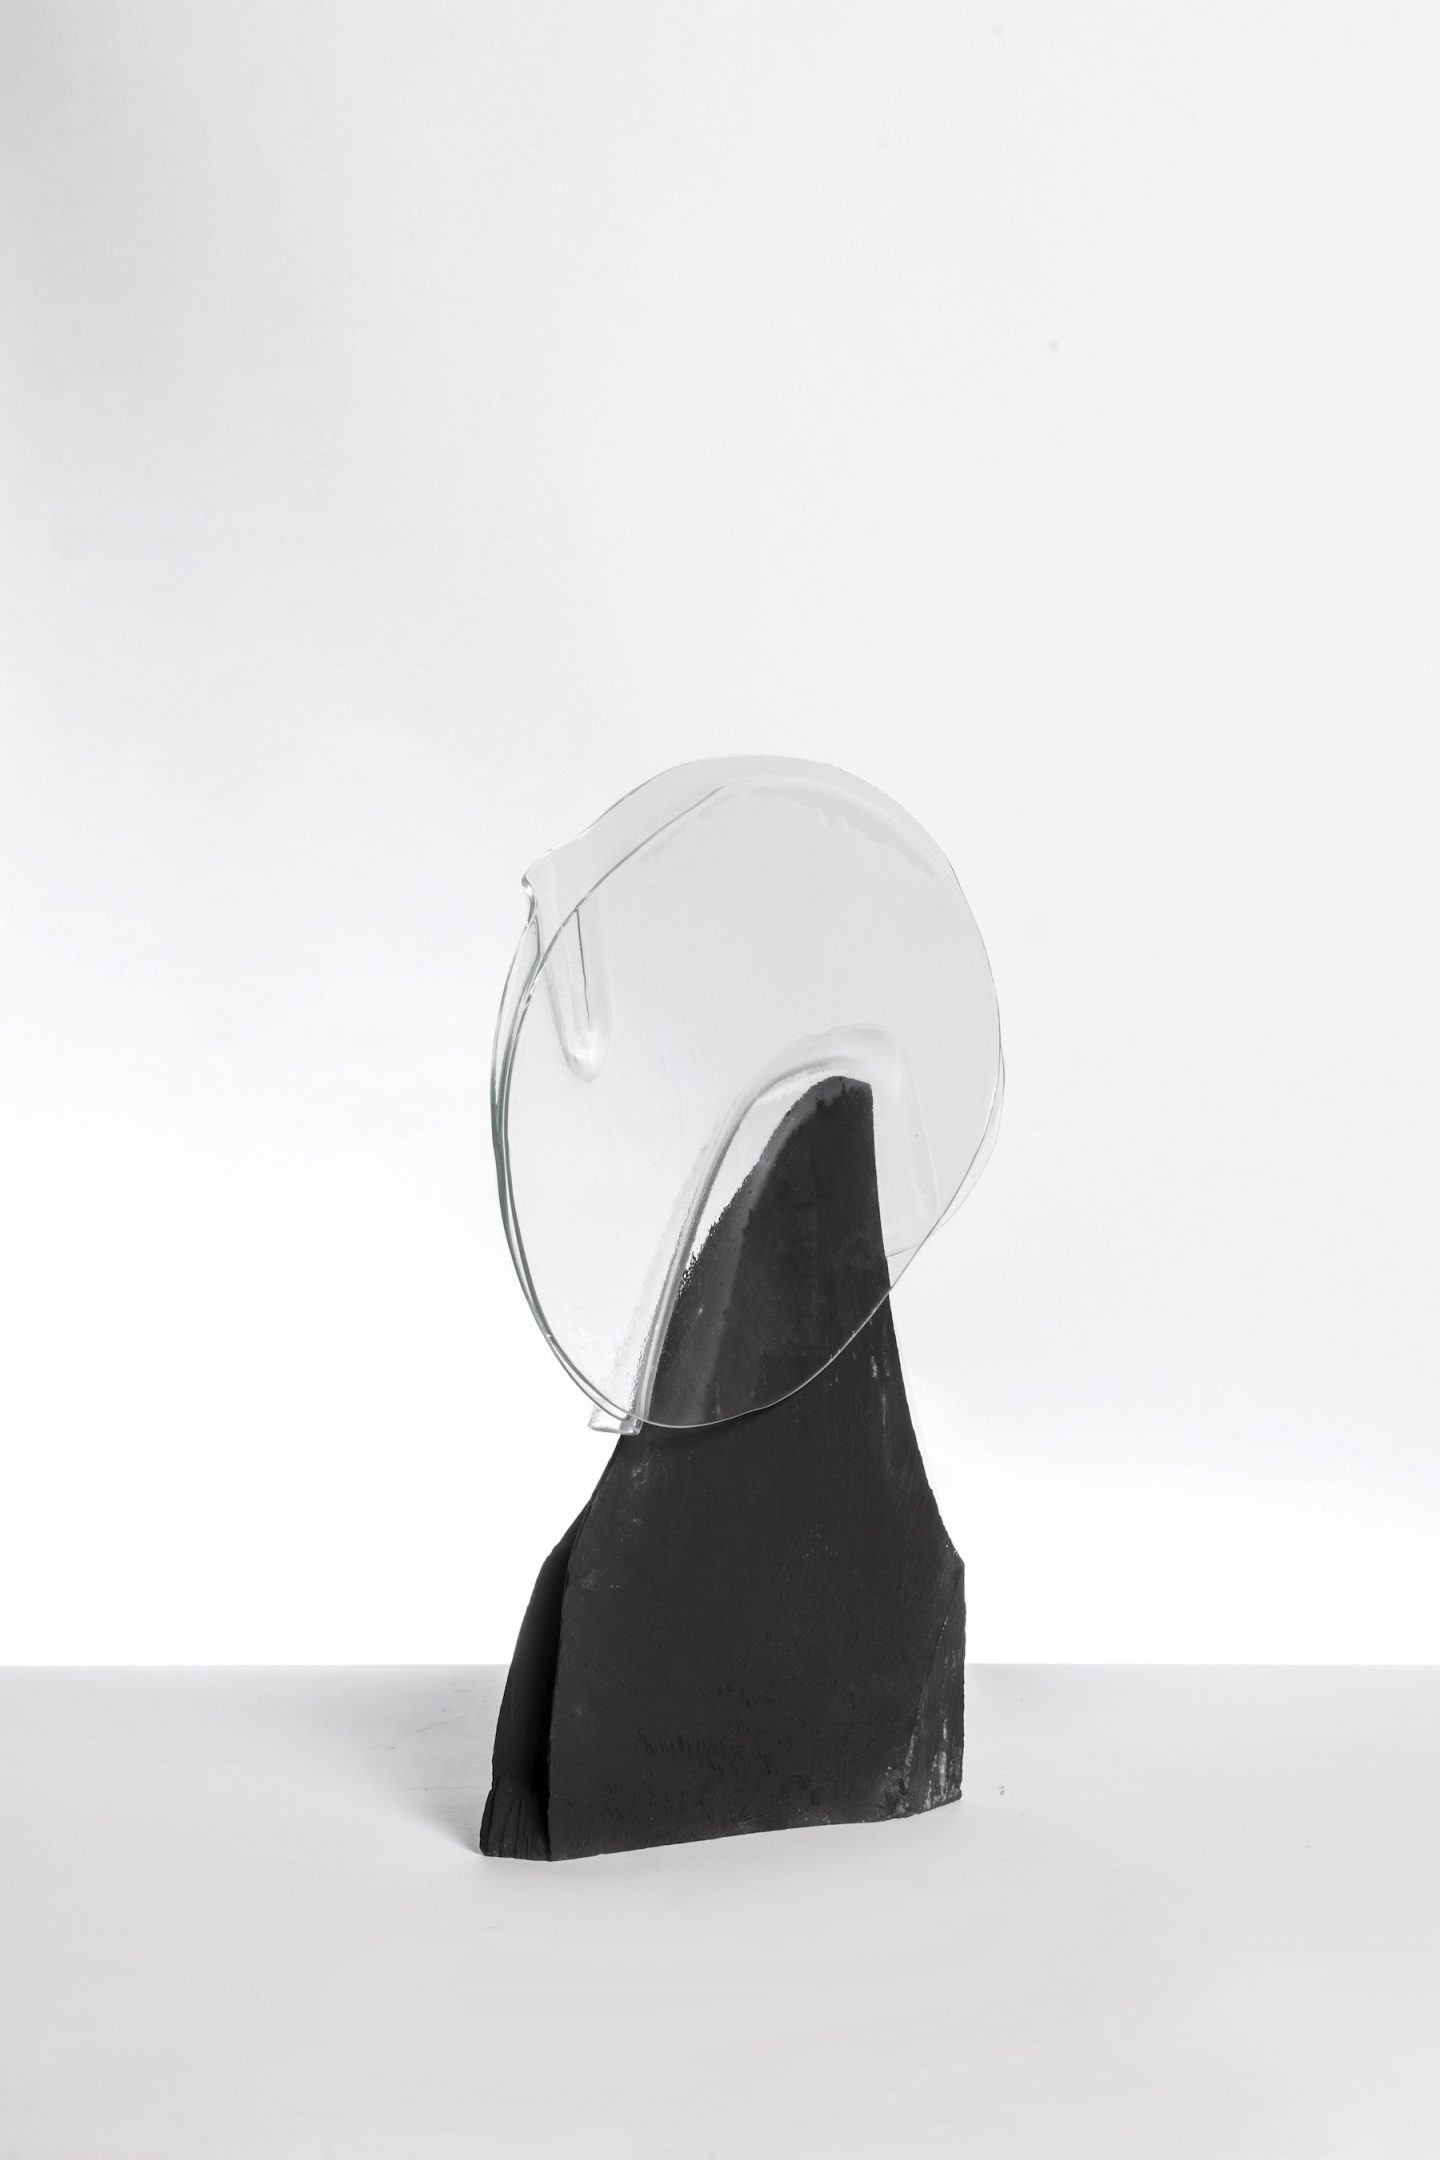 iGNANT-Design-Sara-Ricciardi-Vases-009